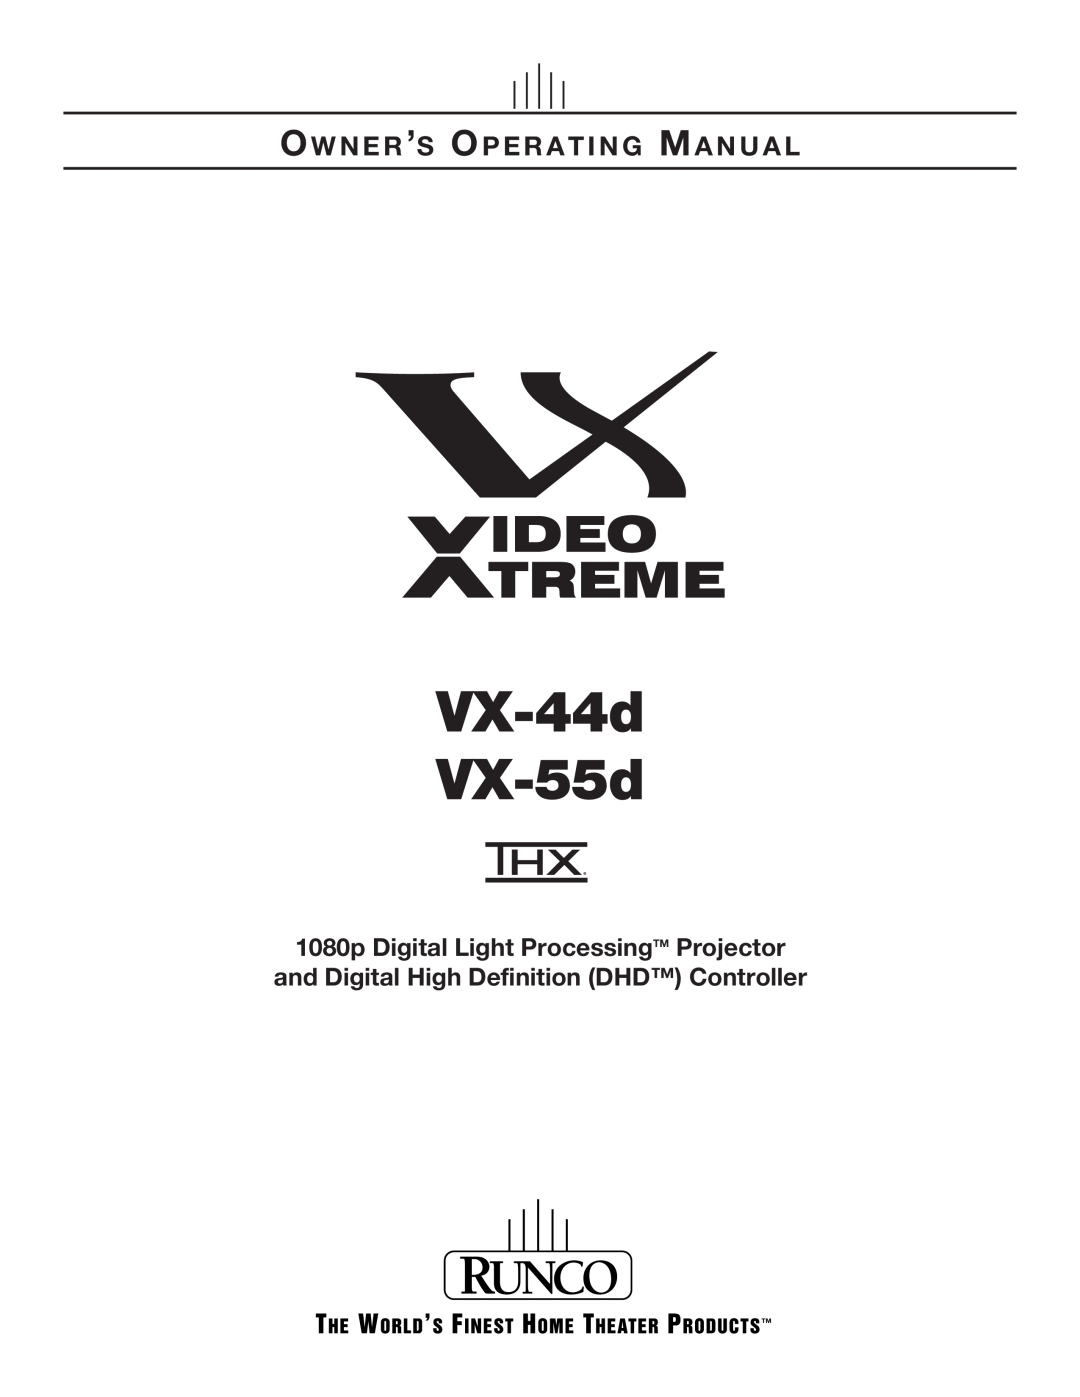 Runco VX-55D, VX-44D manual VX-44d VX-55d, Ow N E R ’S Op E R A T I N G Ma N U A L 